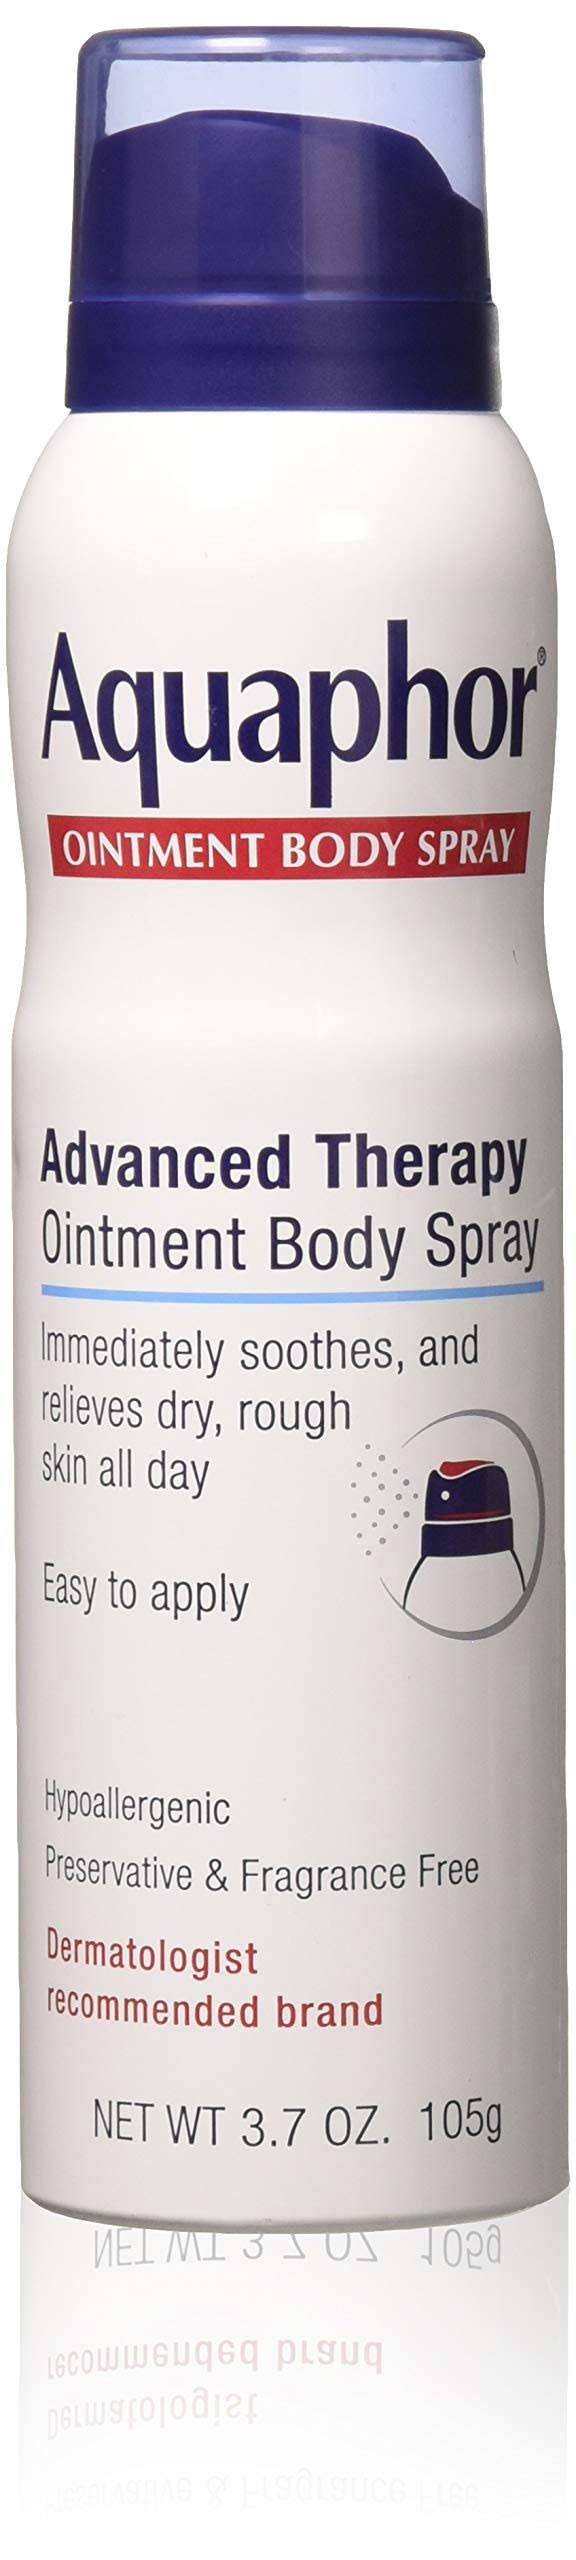 Aquaphor advanced therapy ointment body spray, 3.7 oz